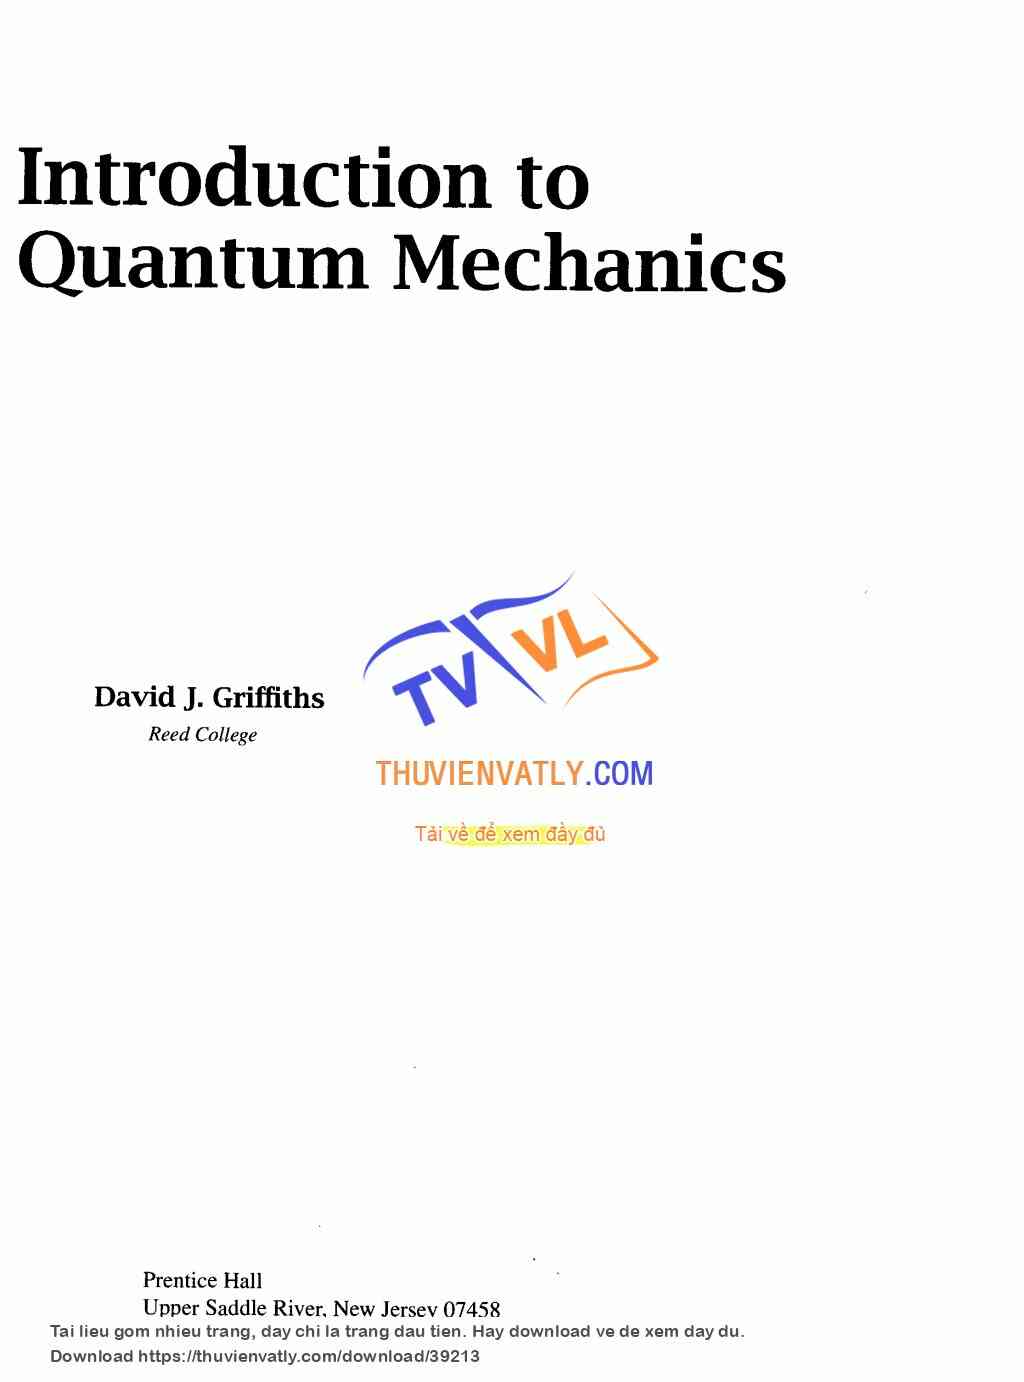 Introduction to Quantum Mechanics - D. Griffiths